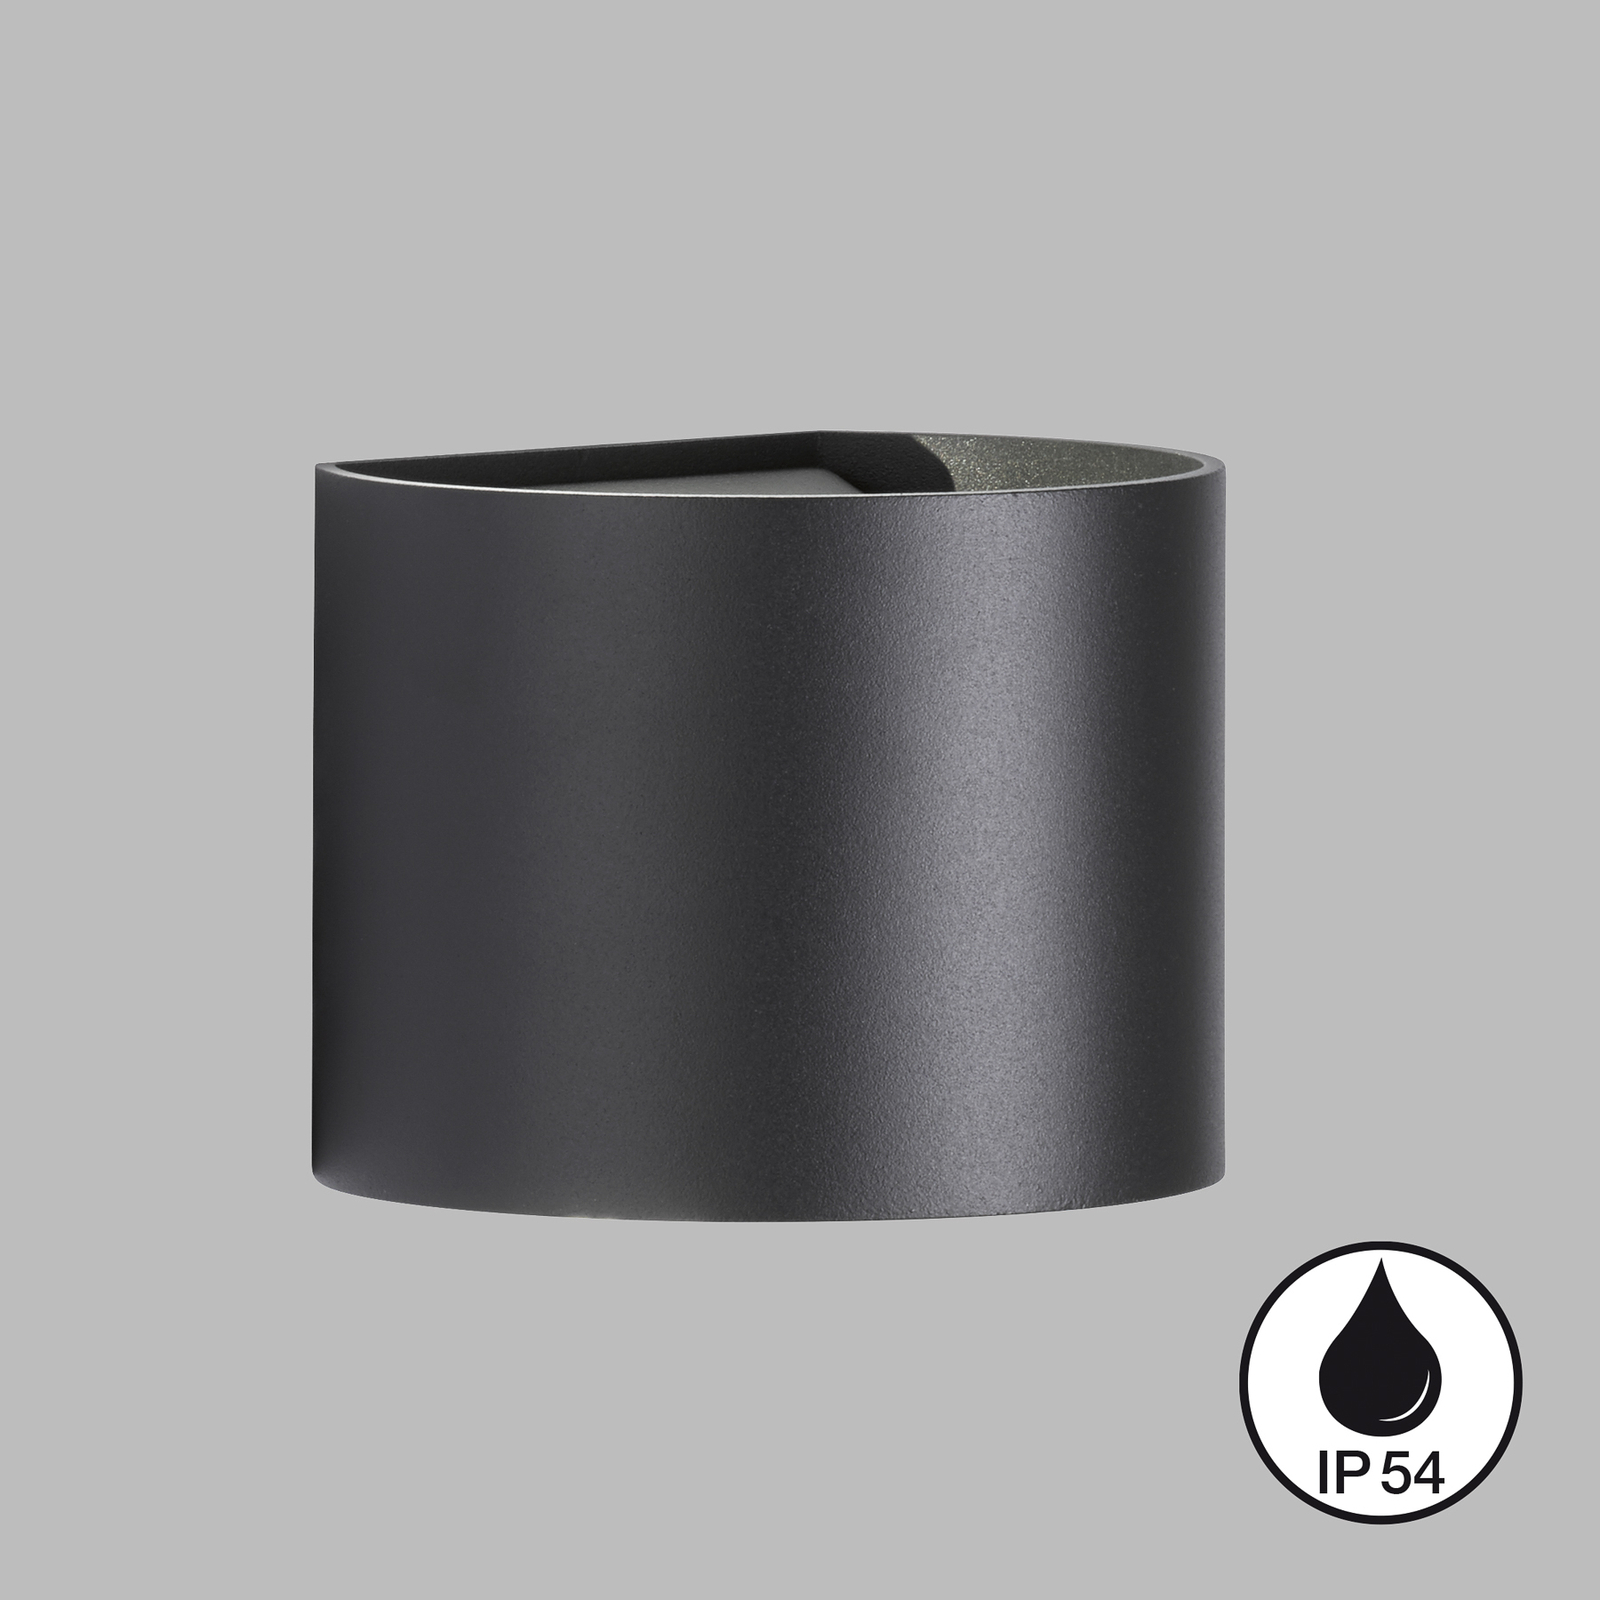 Kinkiet zewnętrzny Matteo LED, czarny, szerokość 14 cm, 2-punktowa.